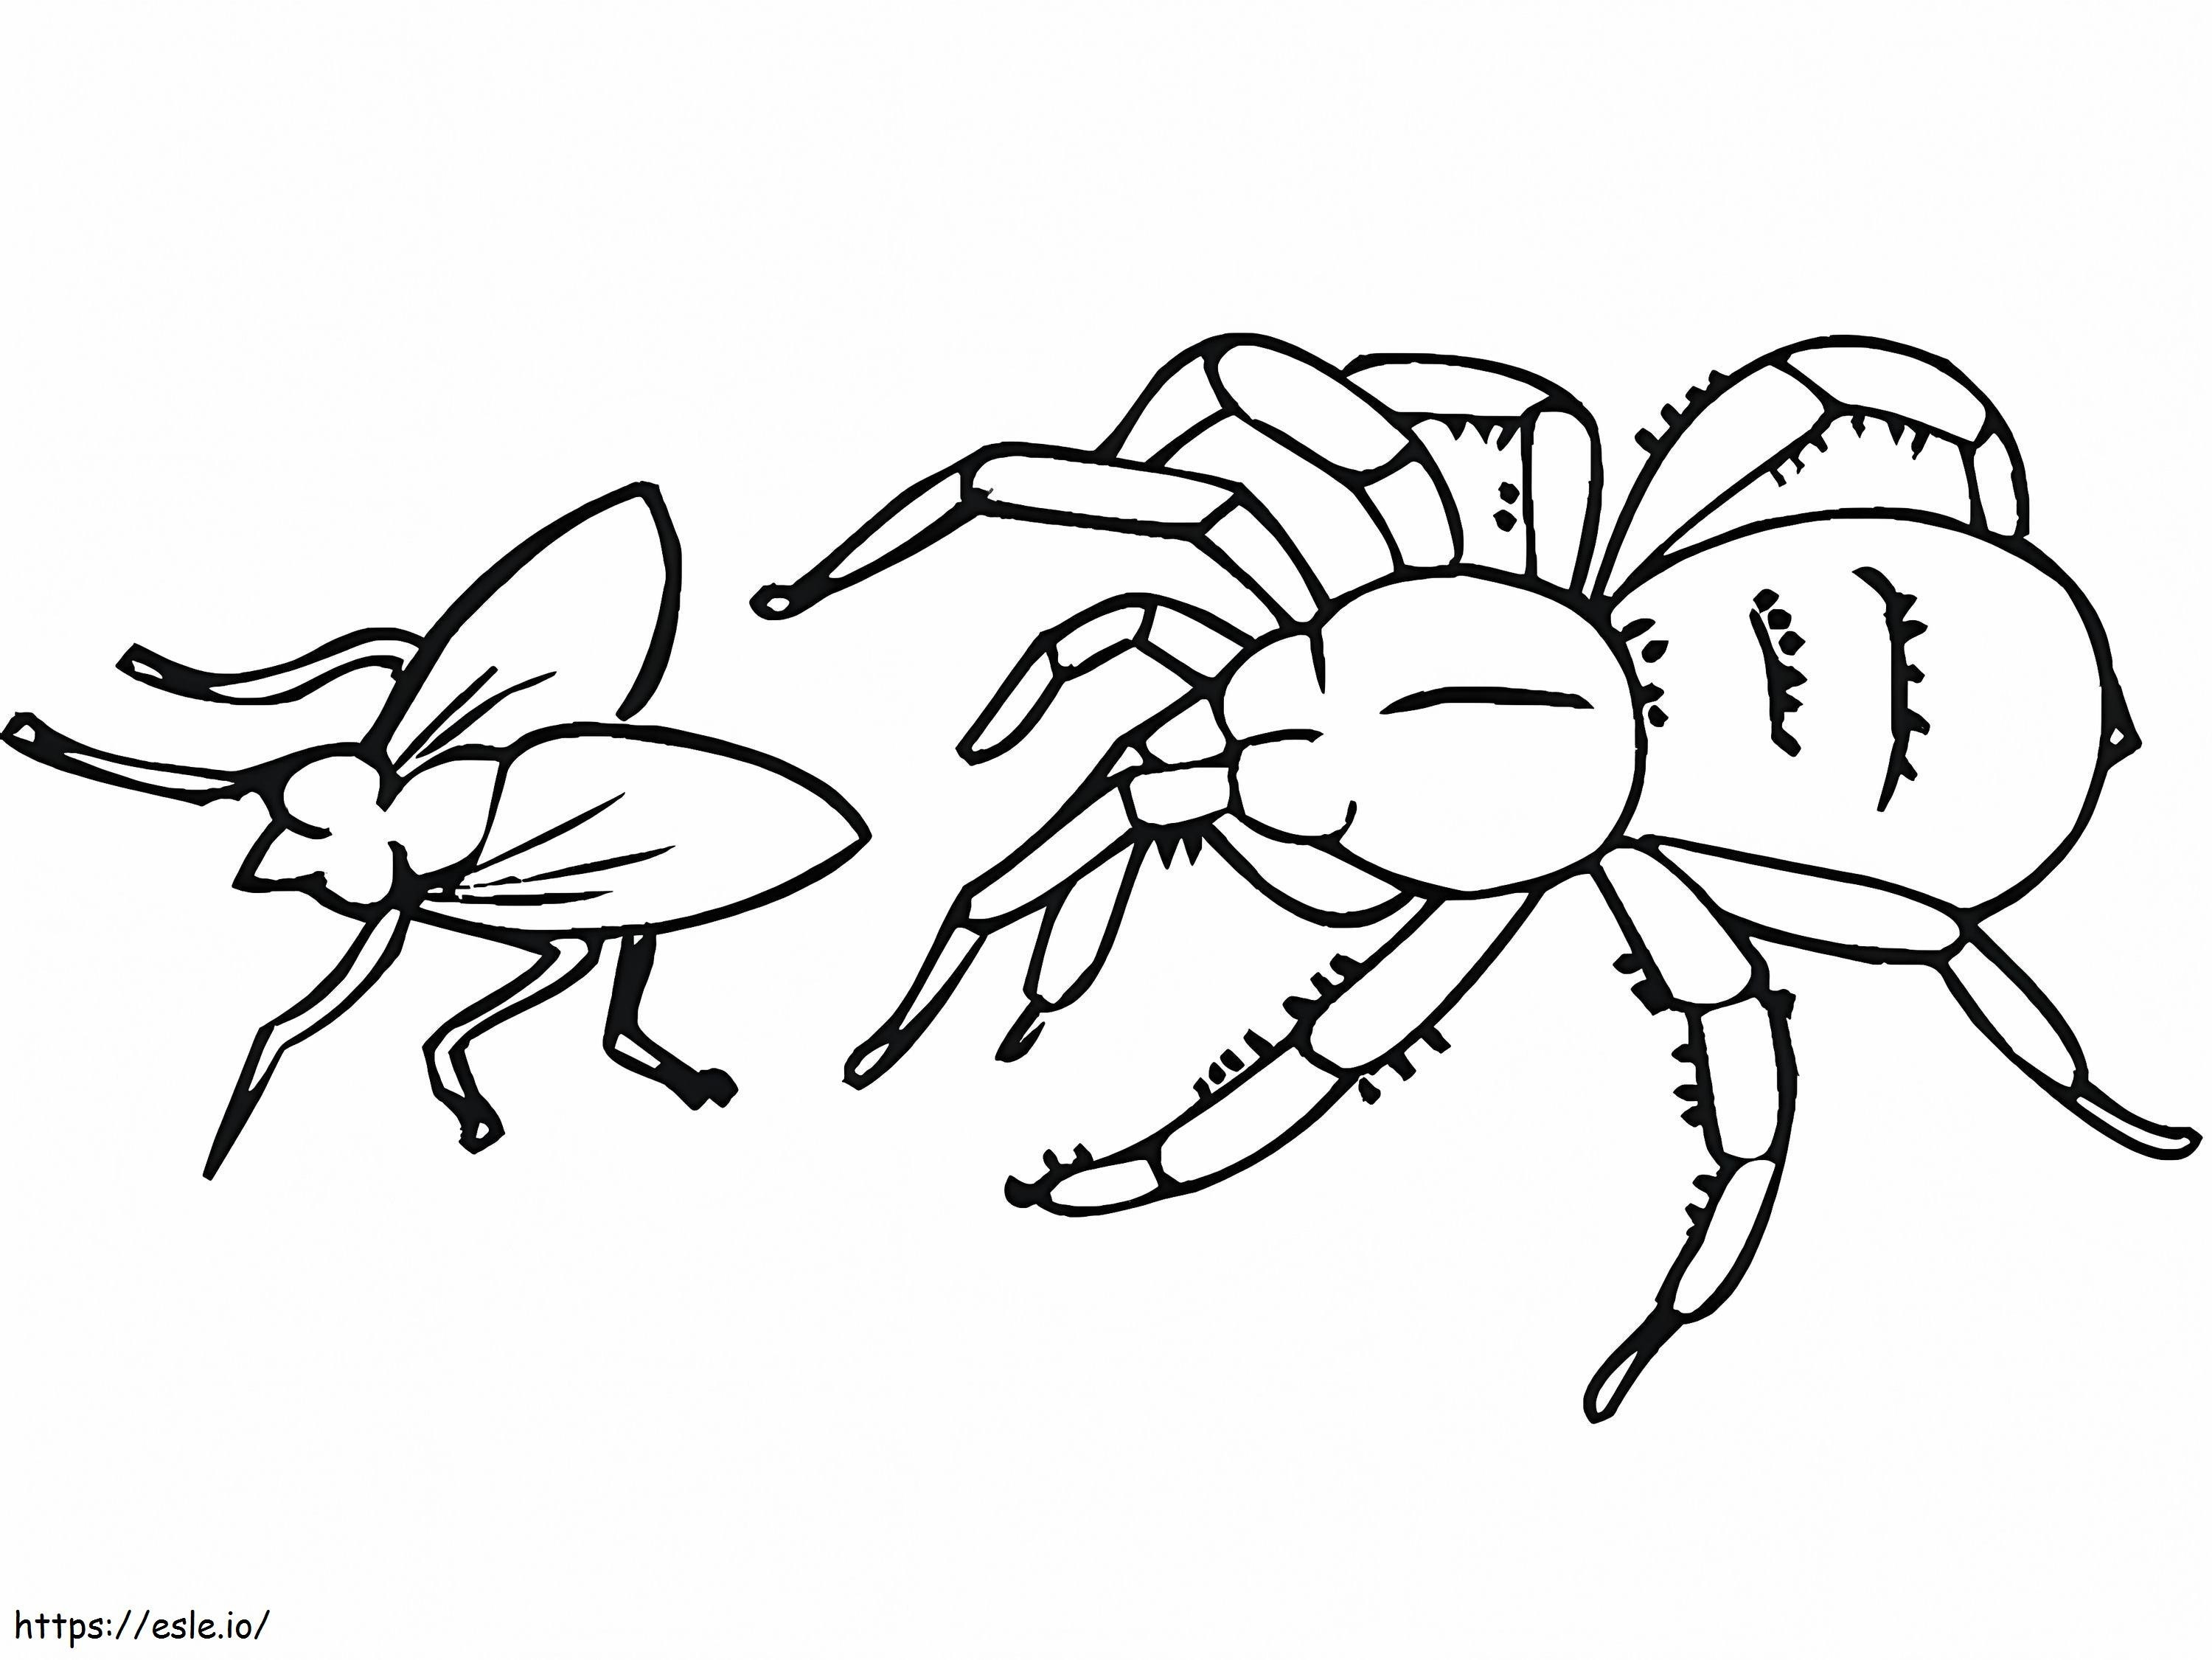 Coloriage Araignée attrapant une mouche à imprimer dessin